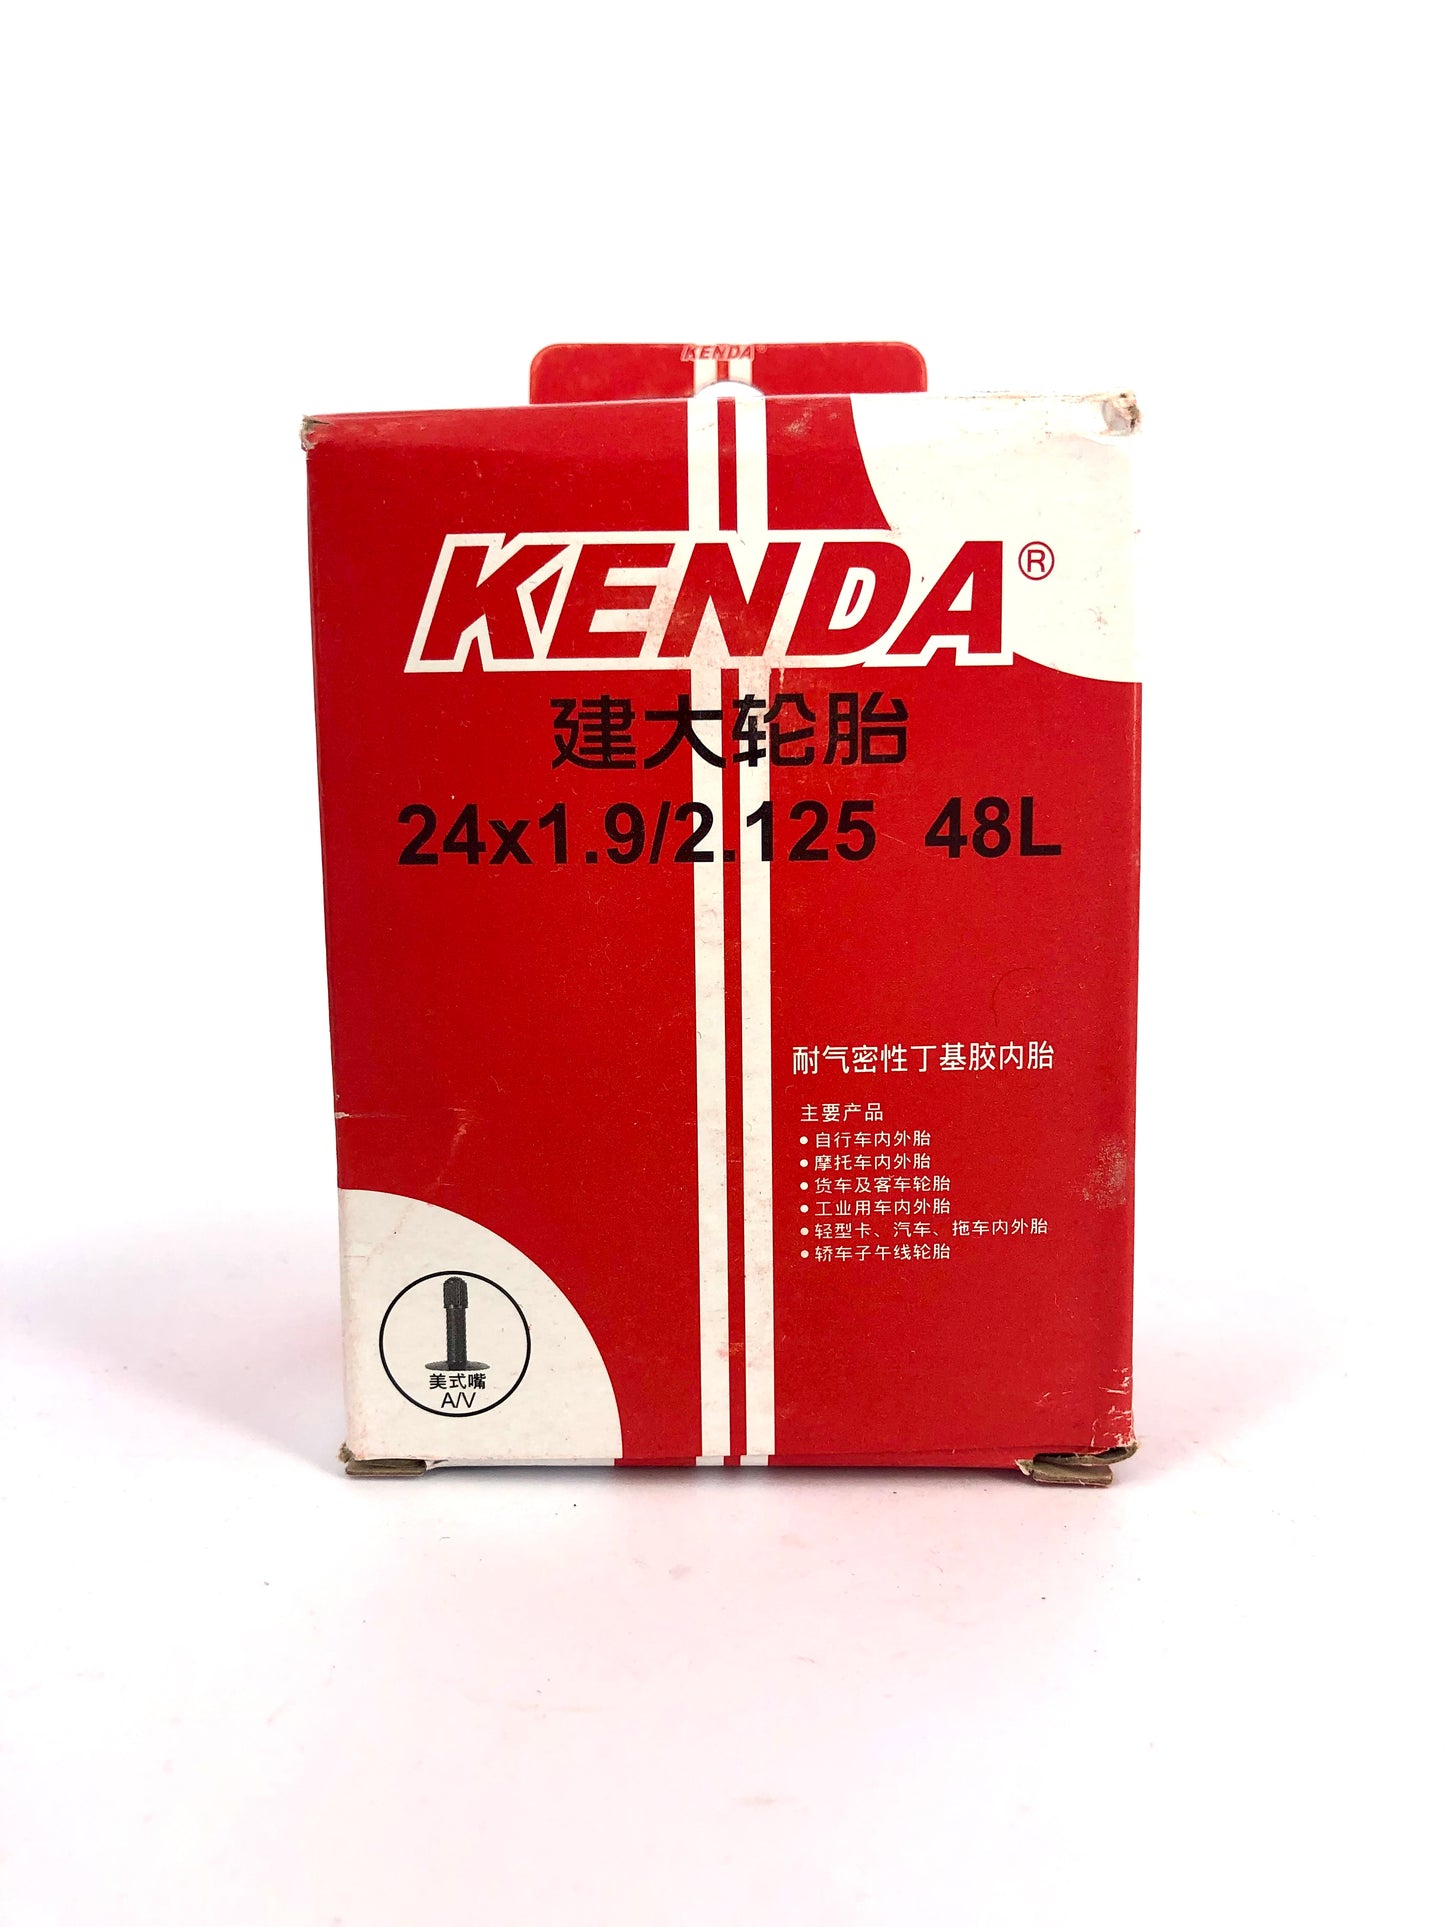 Kenda Inner Tube 24x1.9/2.125 48L